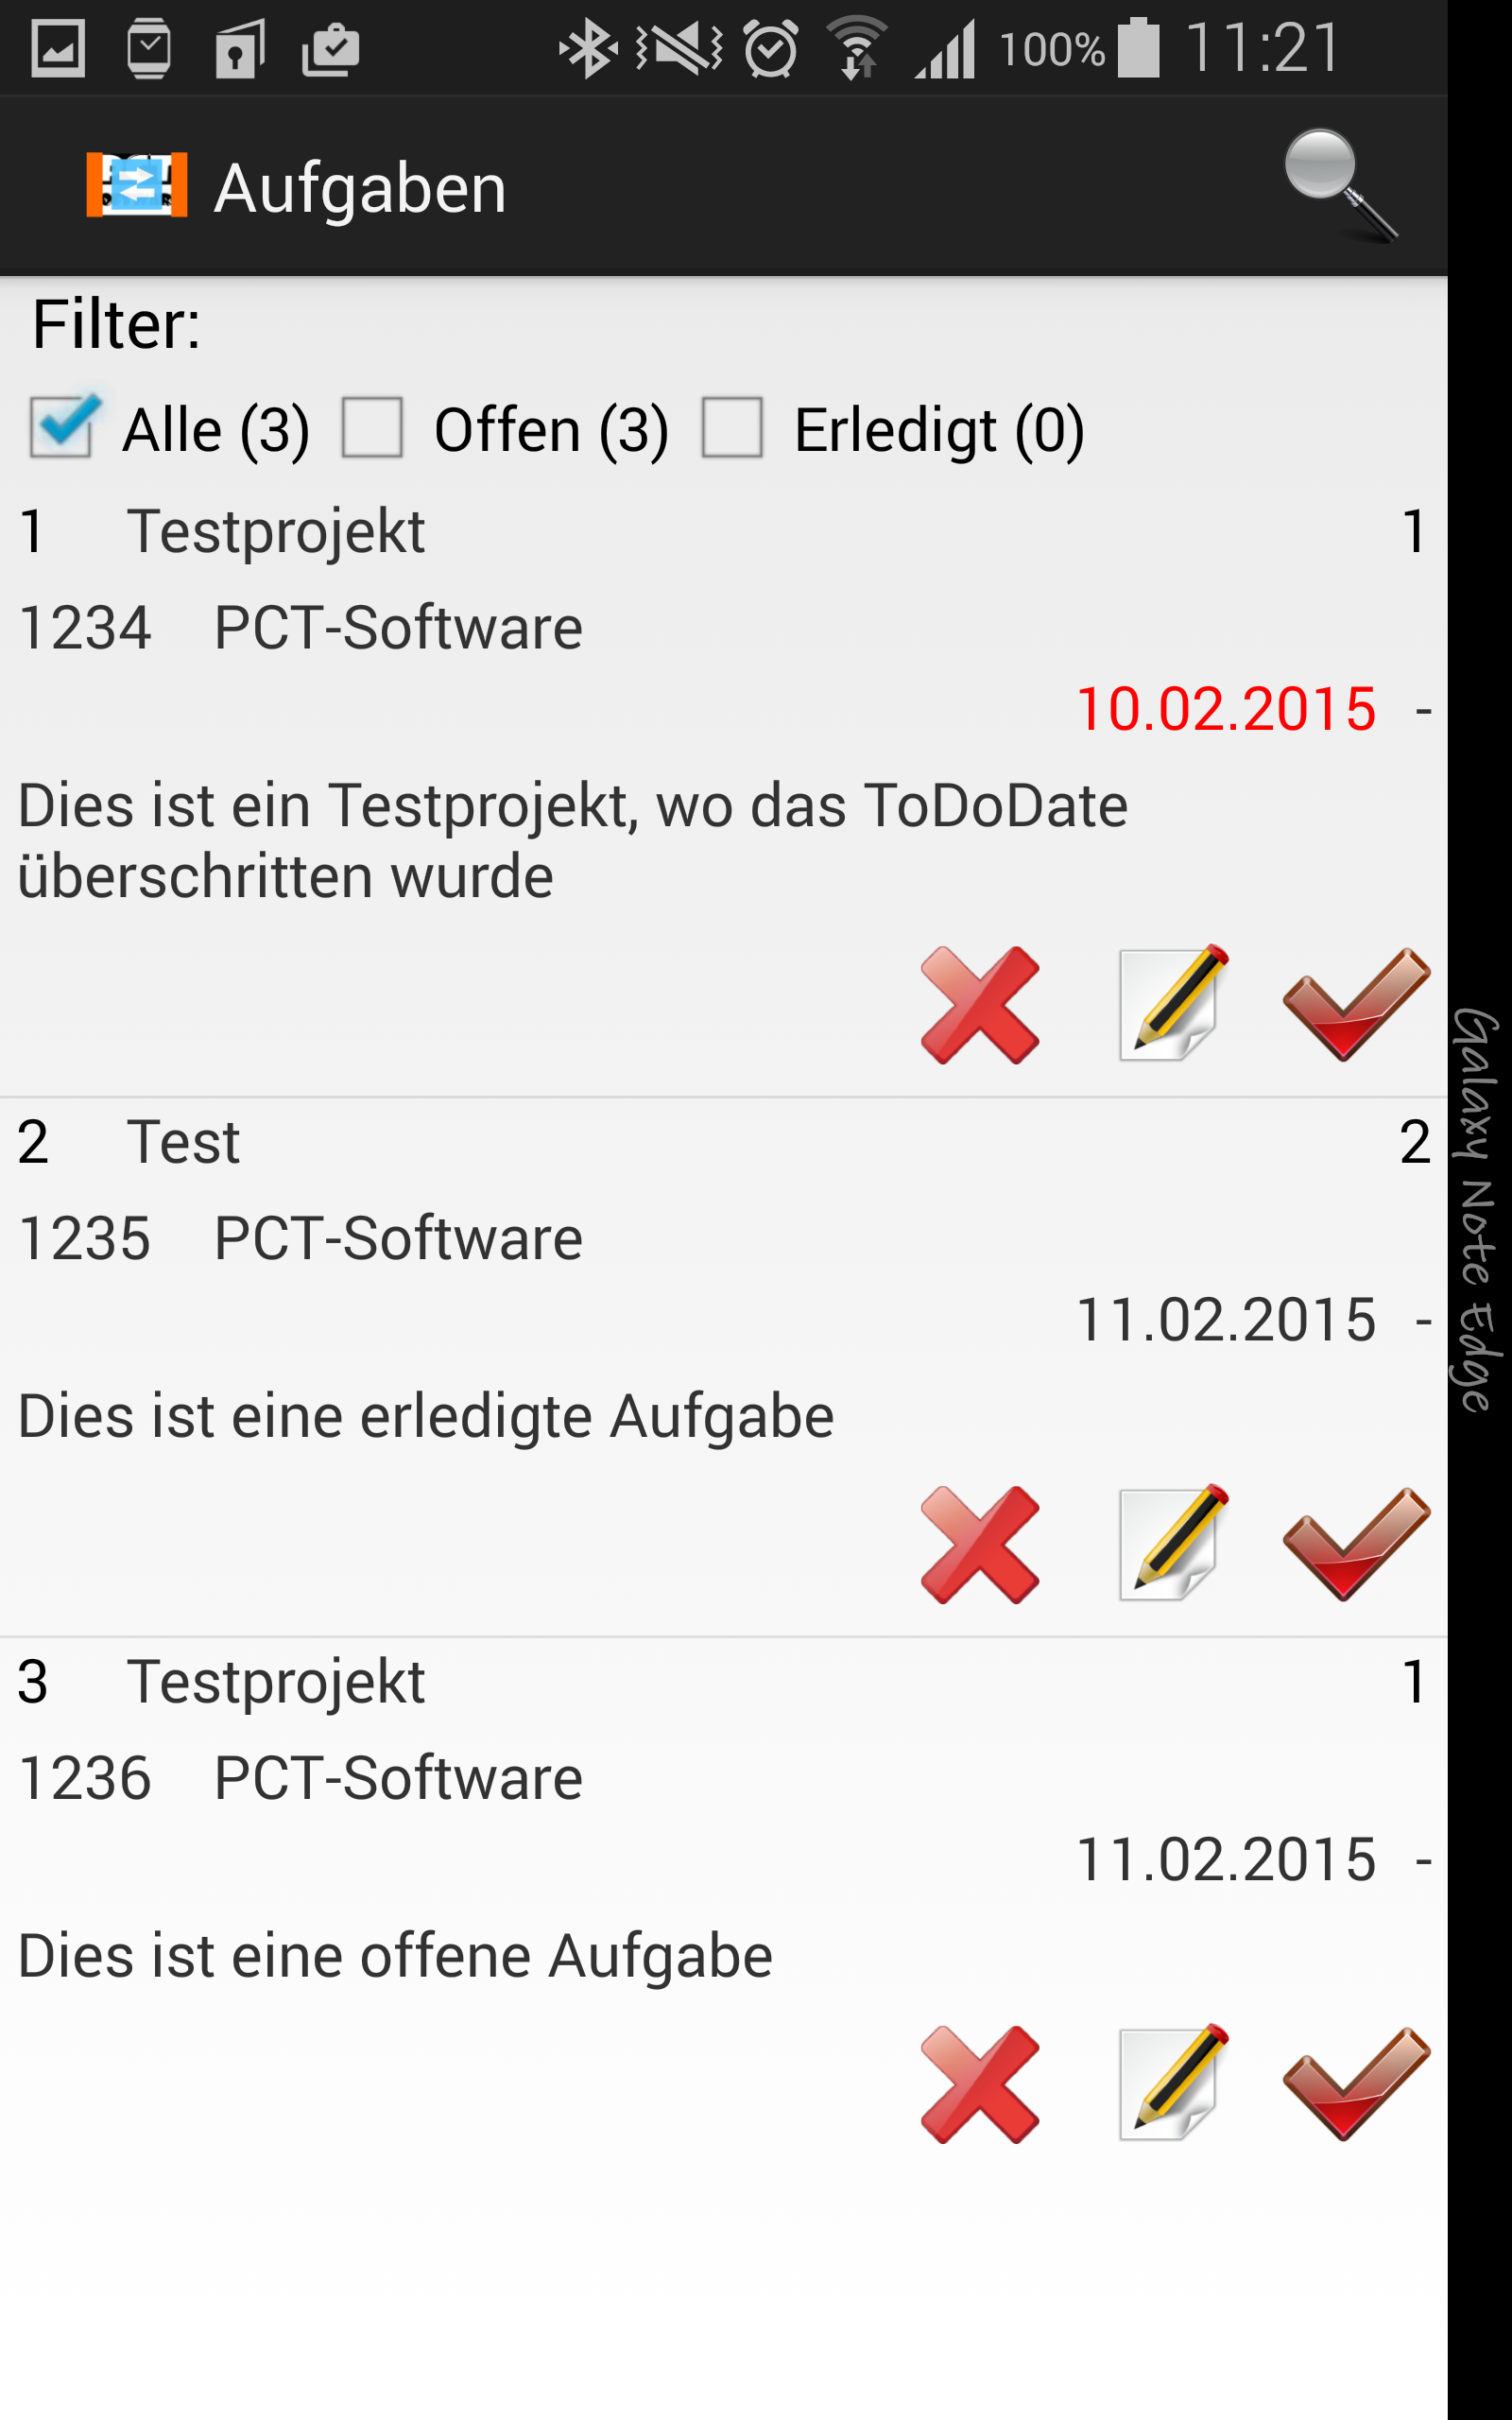 PCT-TDL - Client | Aufgaben anlegen und verwalten - Android App - Screenshot 9.